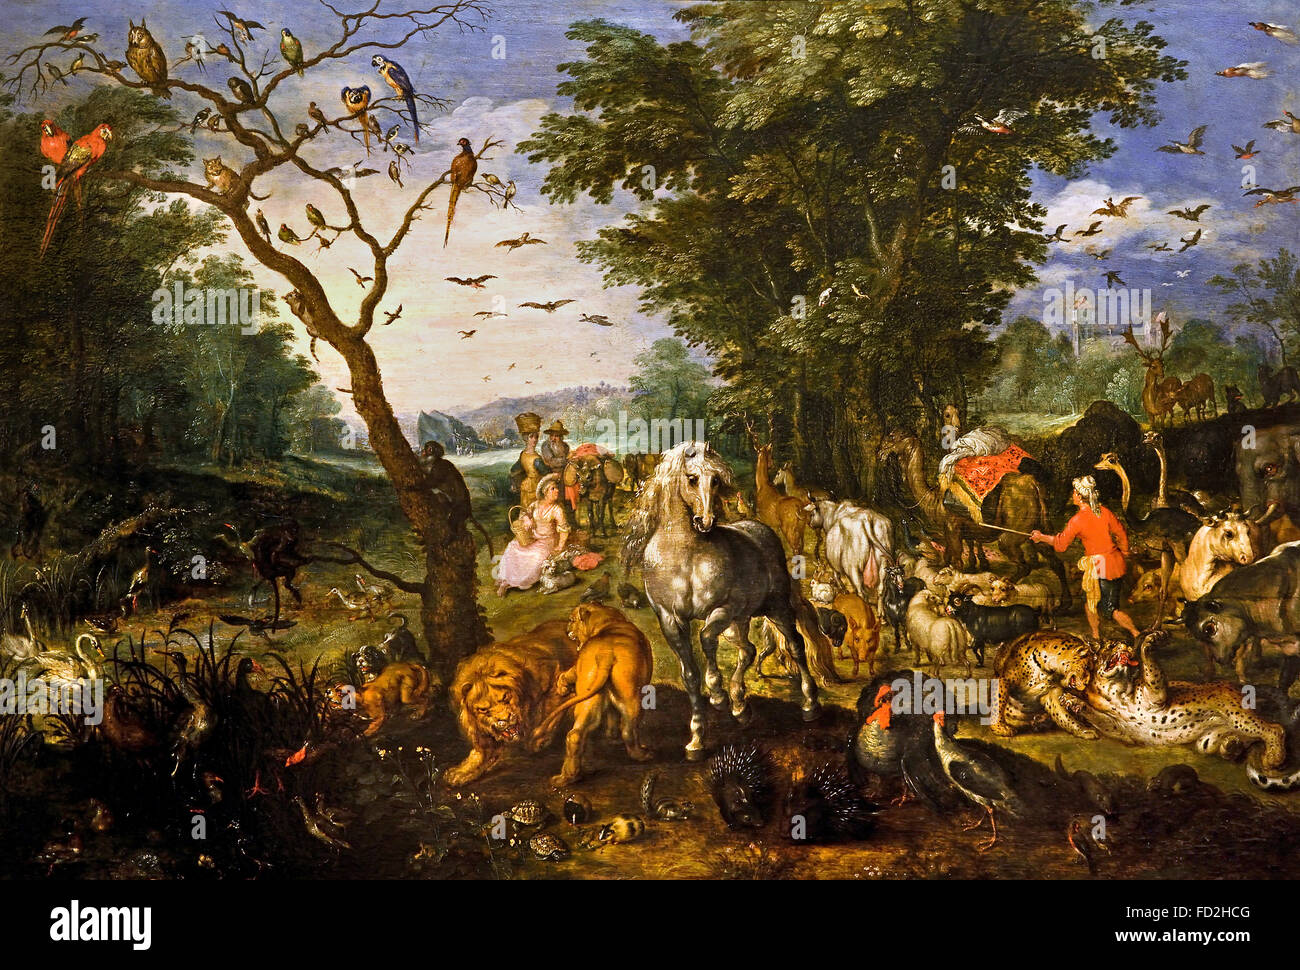 Boarding Animals of Noah's Arche von Jan II Brueghel 1601-78 Flämisch-belgisches Belgien Noah ist ein biblischer Patriarch, der eine Arche gebaut hat, um jede Art von Tier vor der großen Sintflut zu retten. Die Genesis-Flut-Erzählung gehört zu den bekanntesten Geschichten der Bibel. Stockfoto